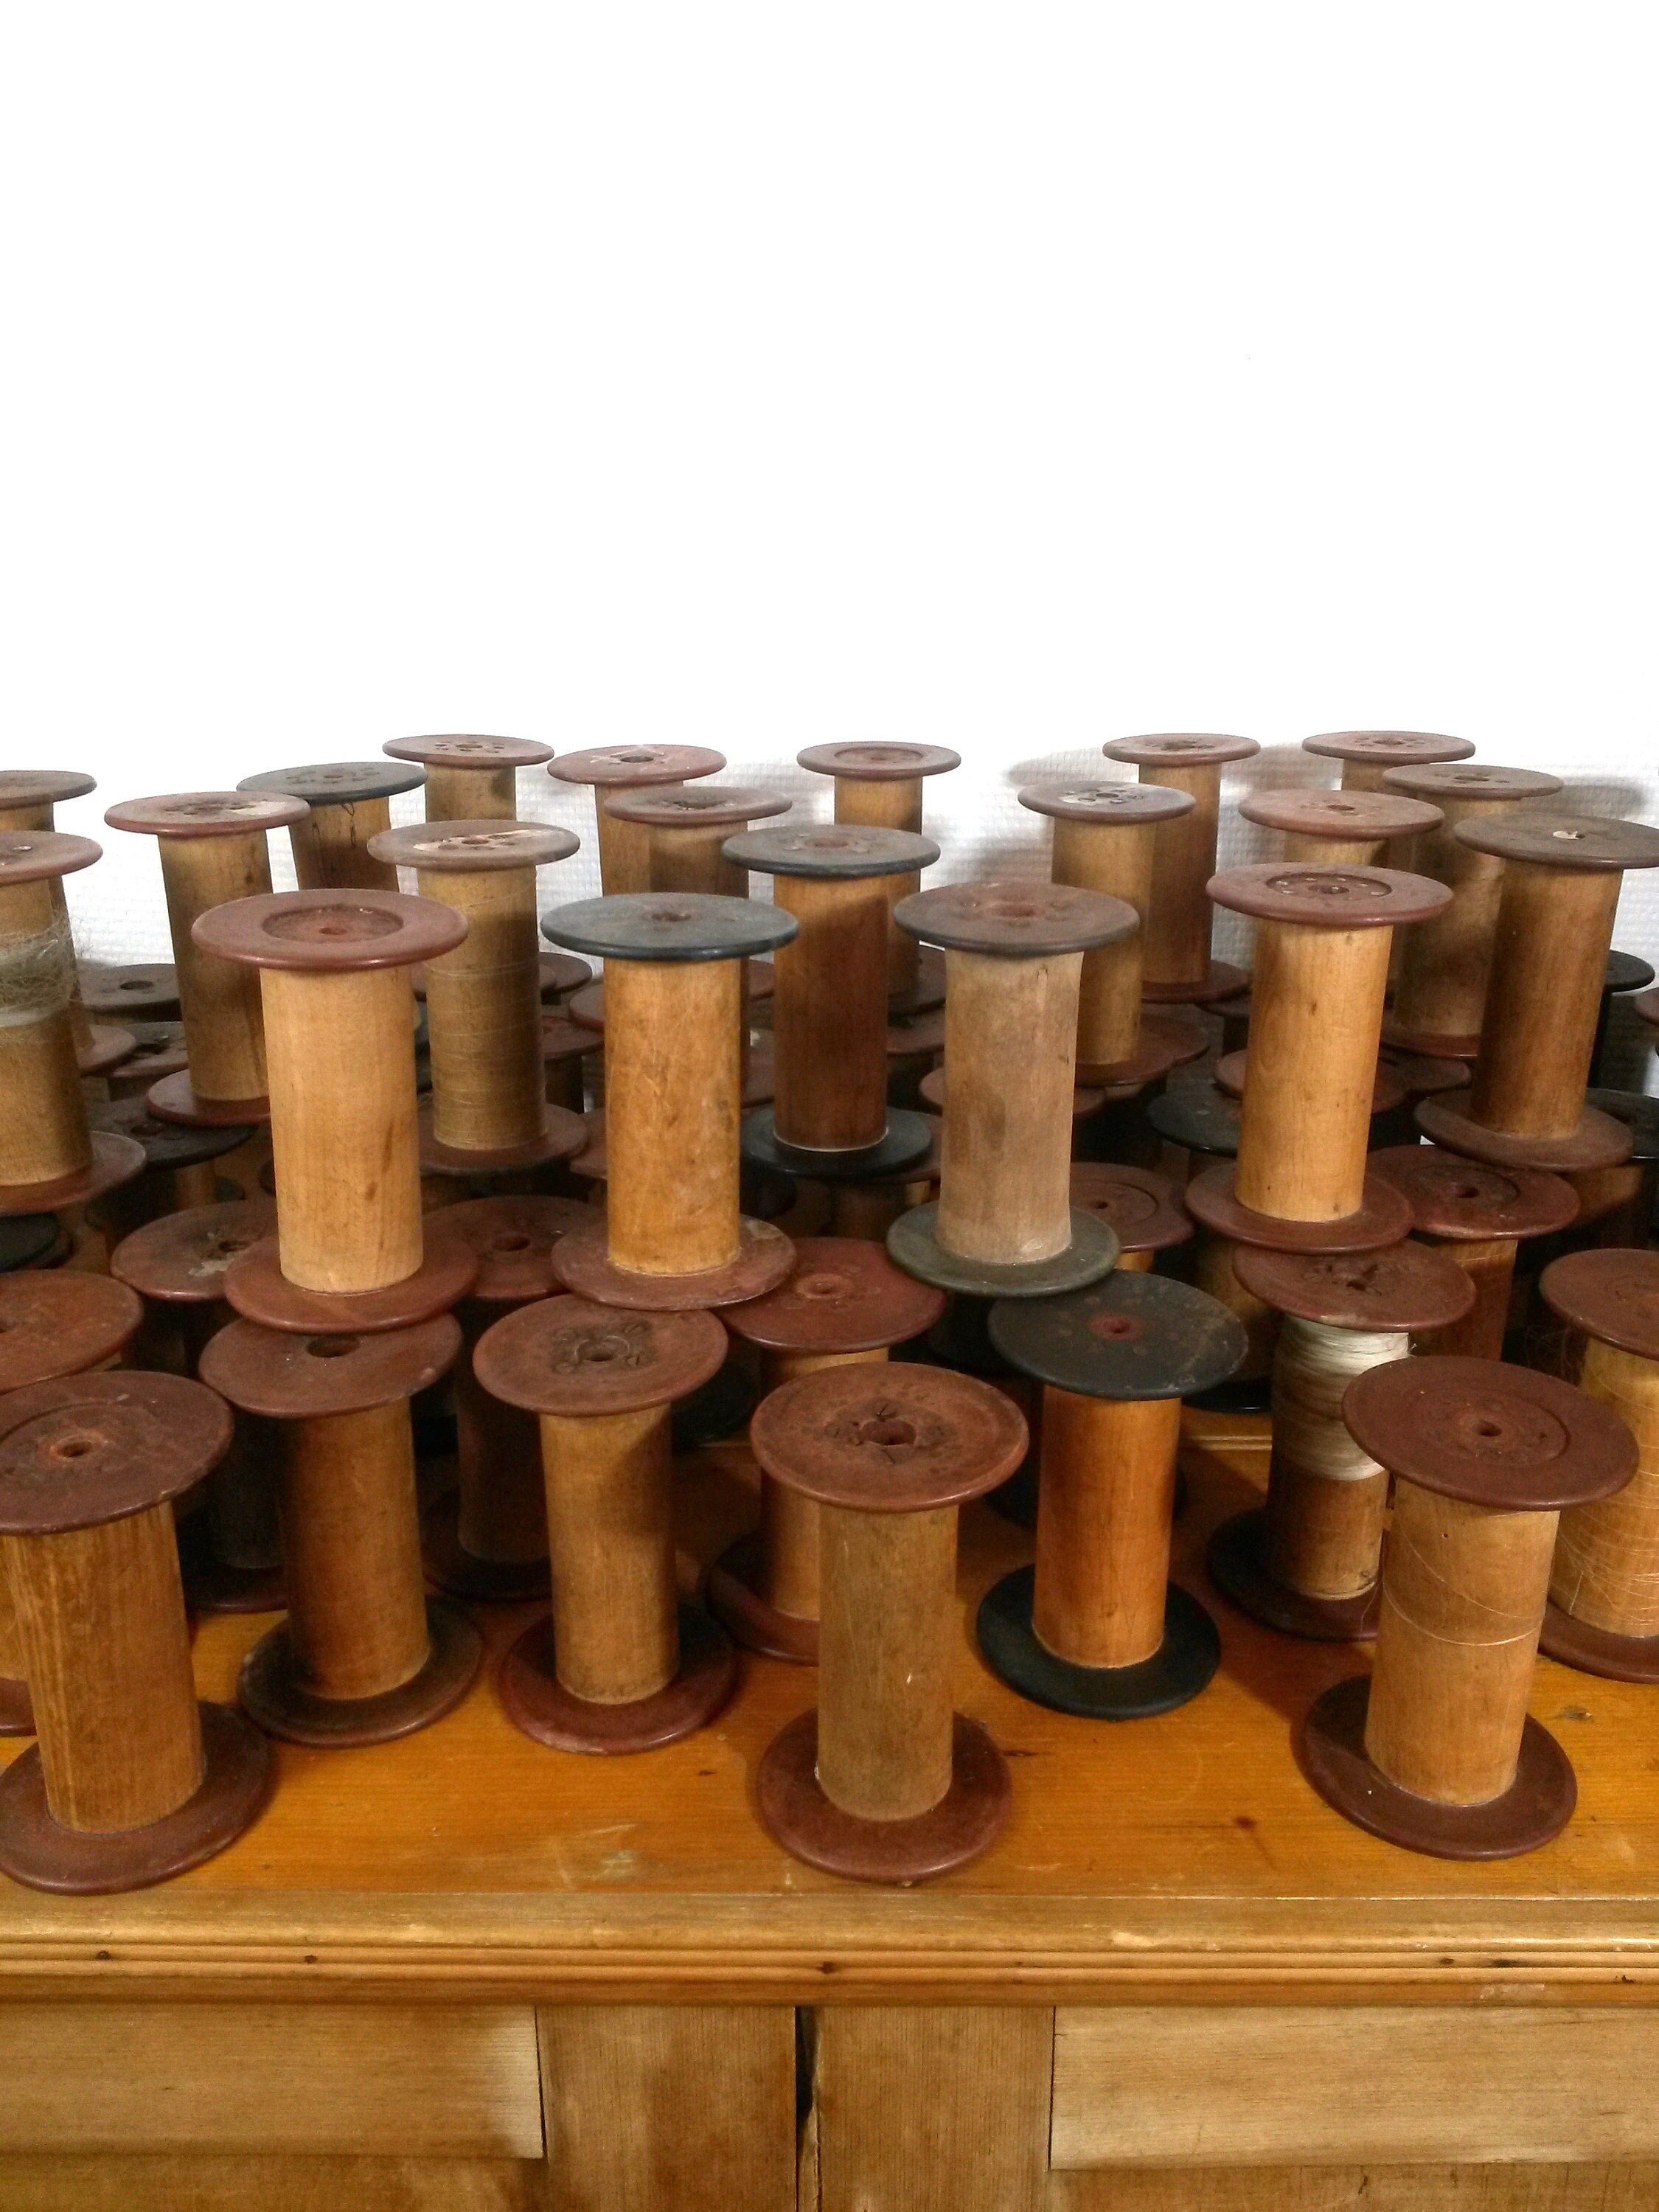 Vintage Wood Spools of Thread - Set of 4